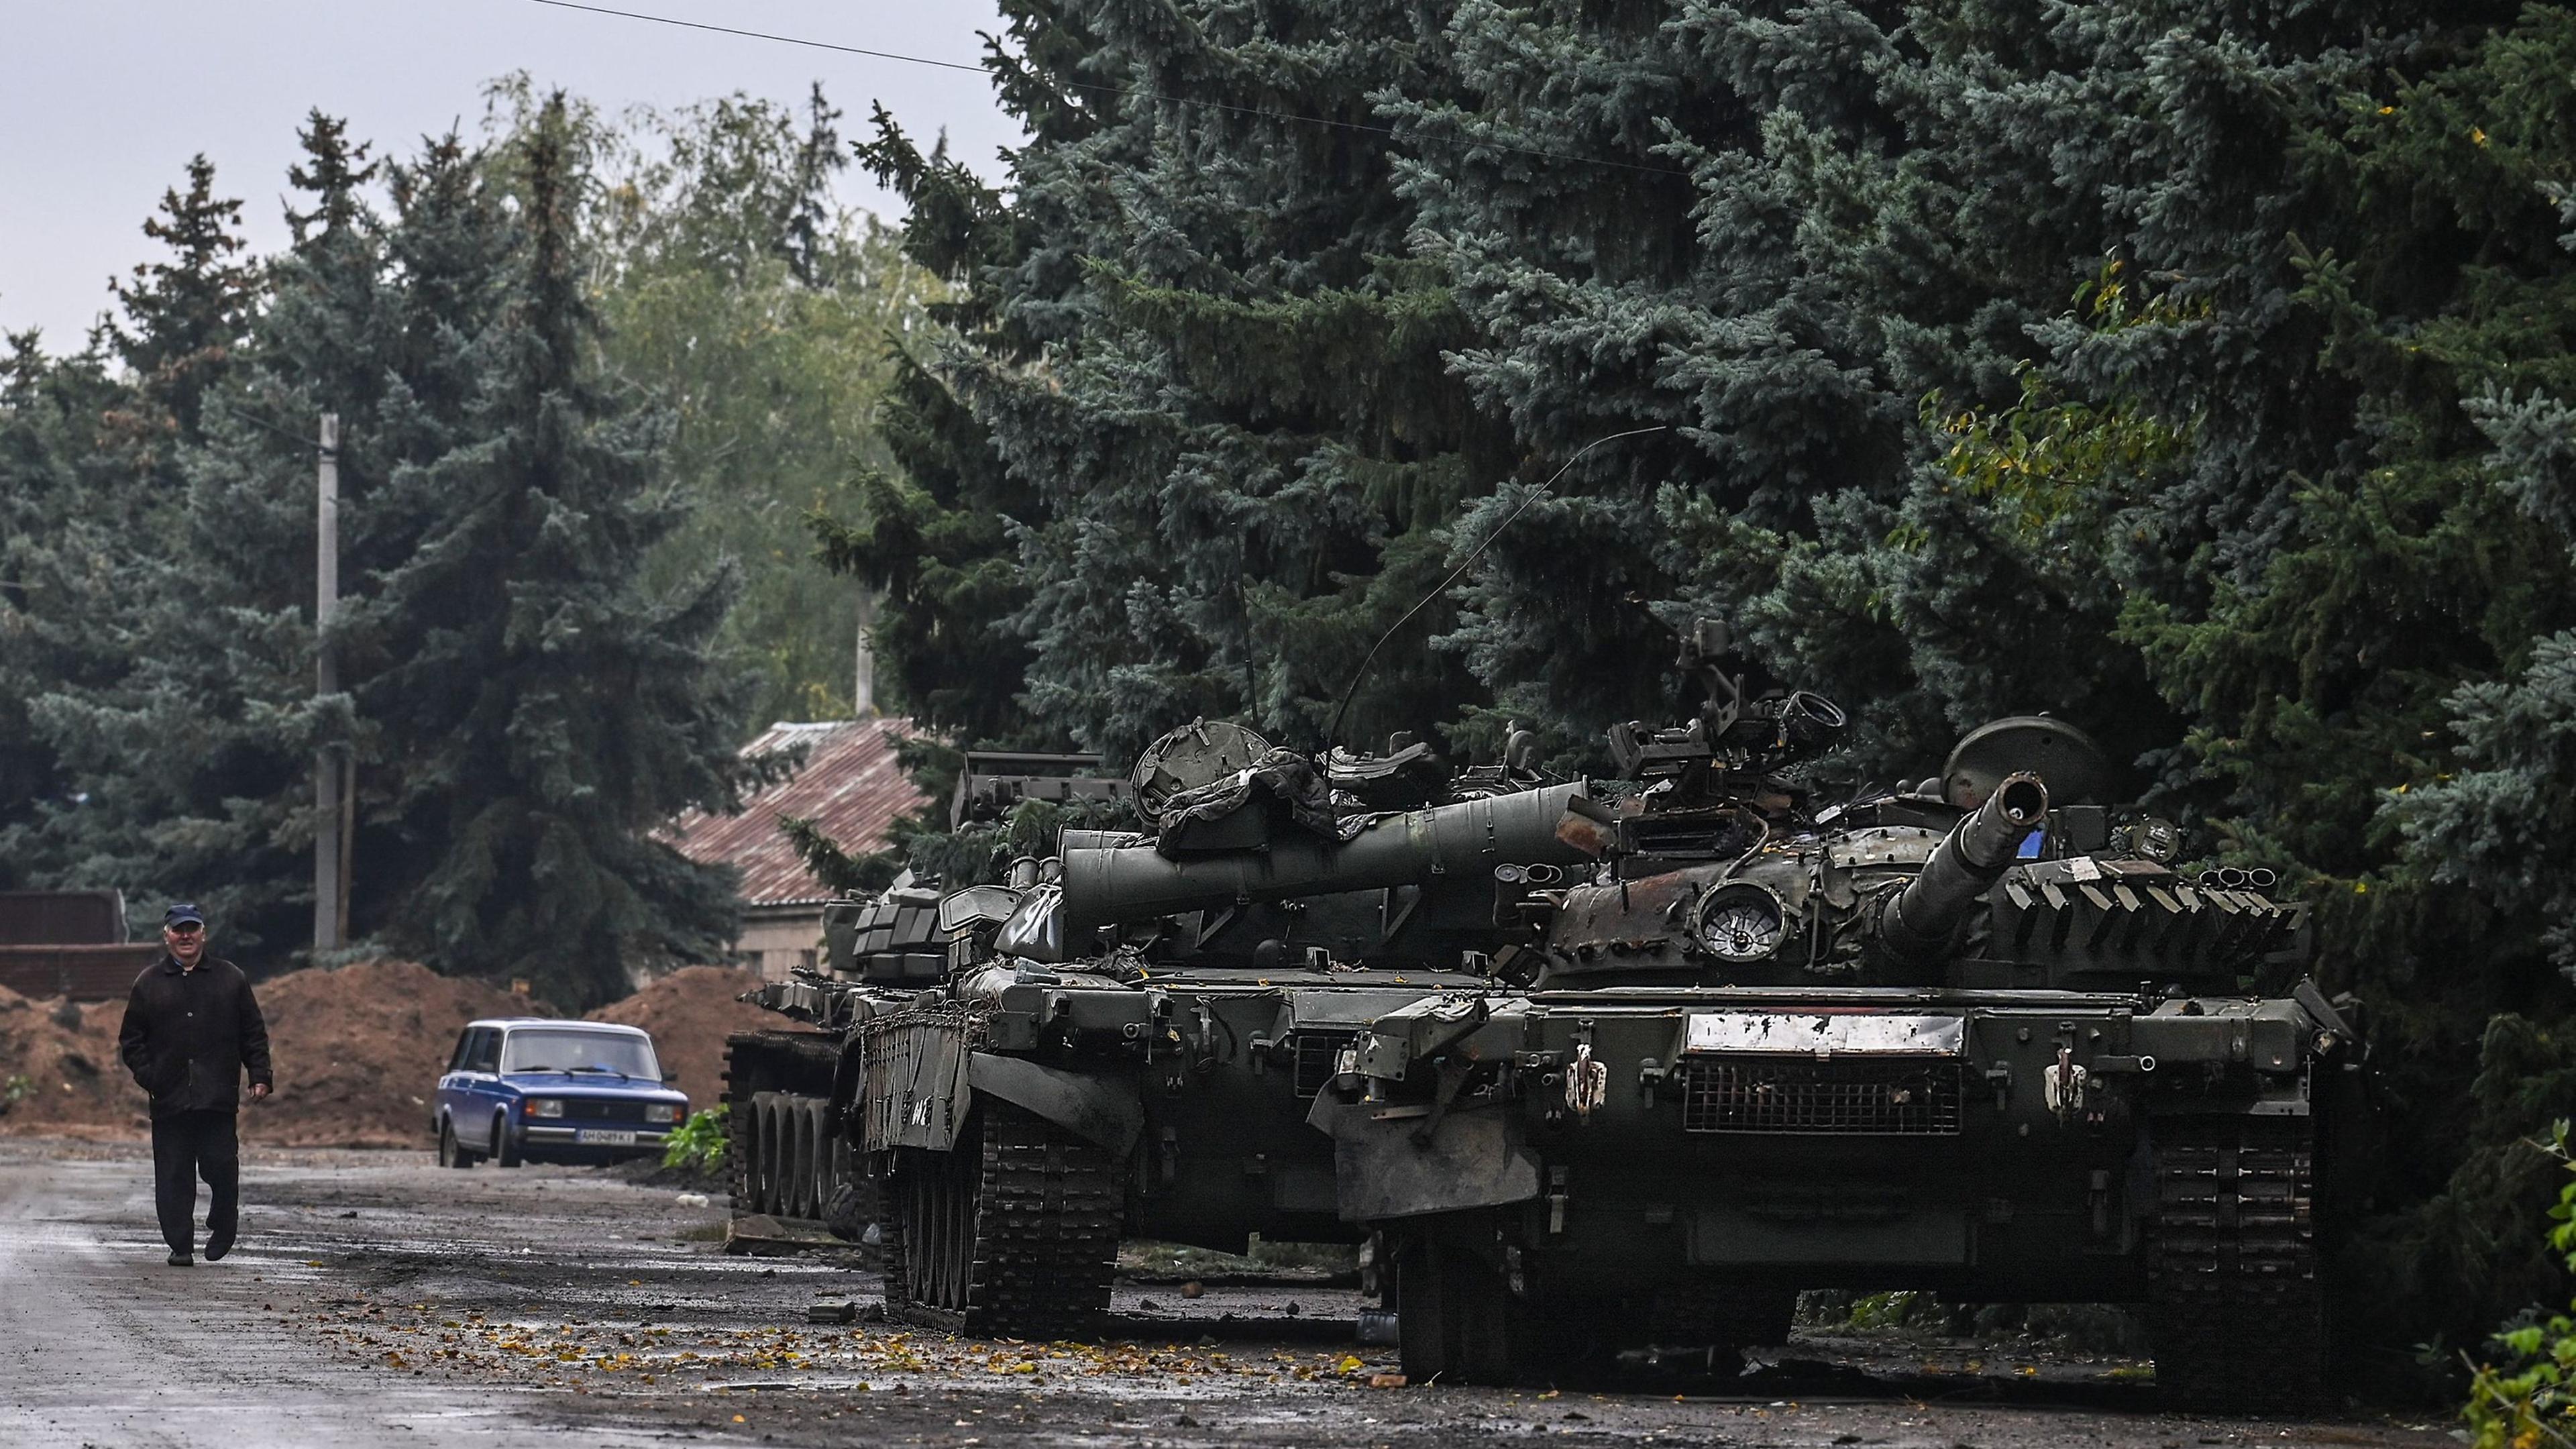 Kherson continua a fazer parte da Rússia apesar da retirada, diz